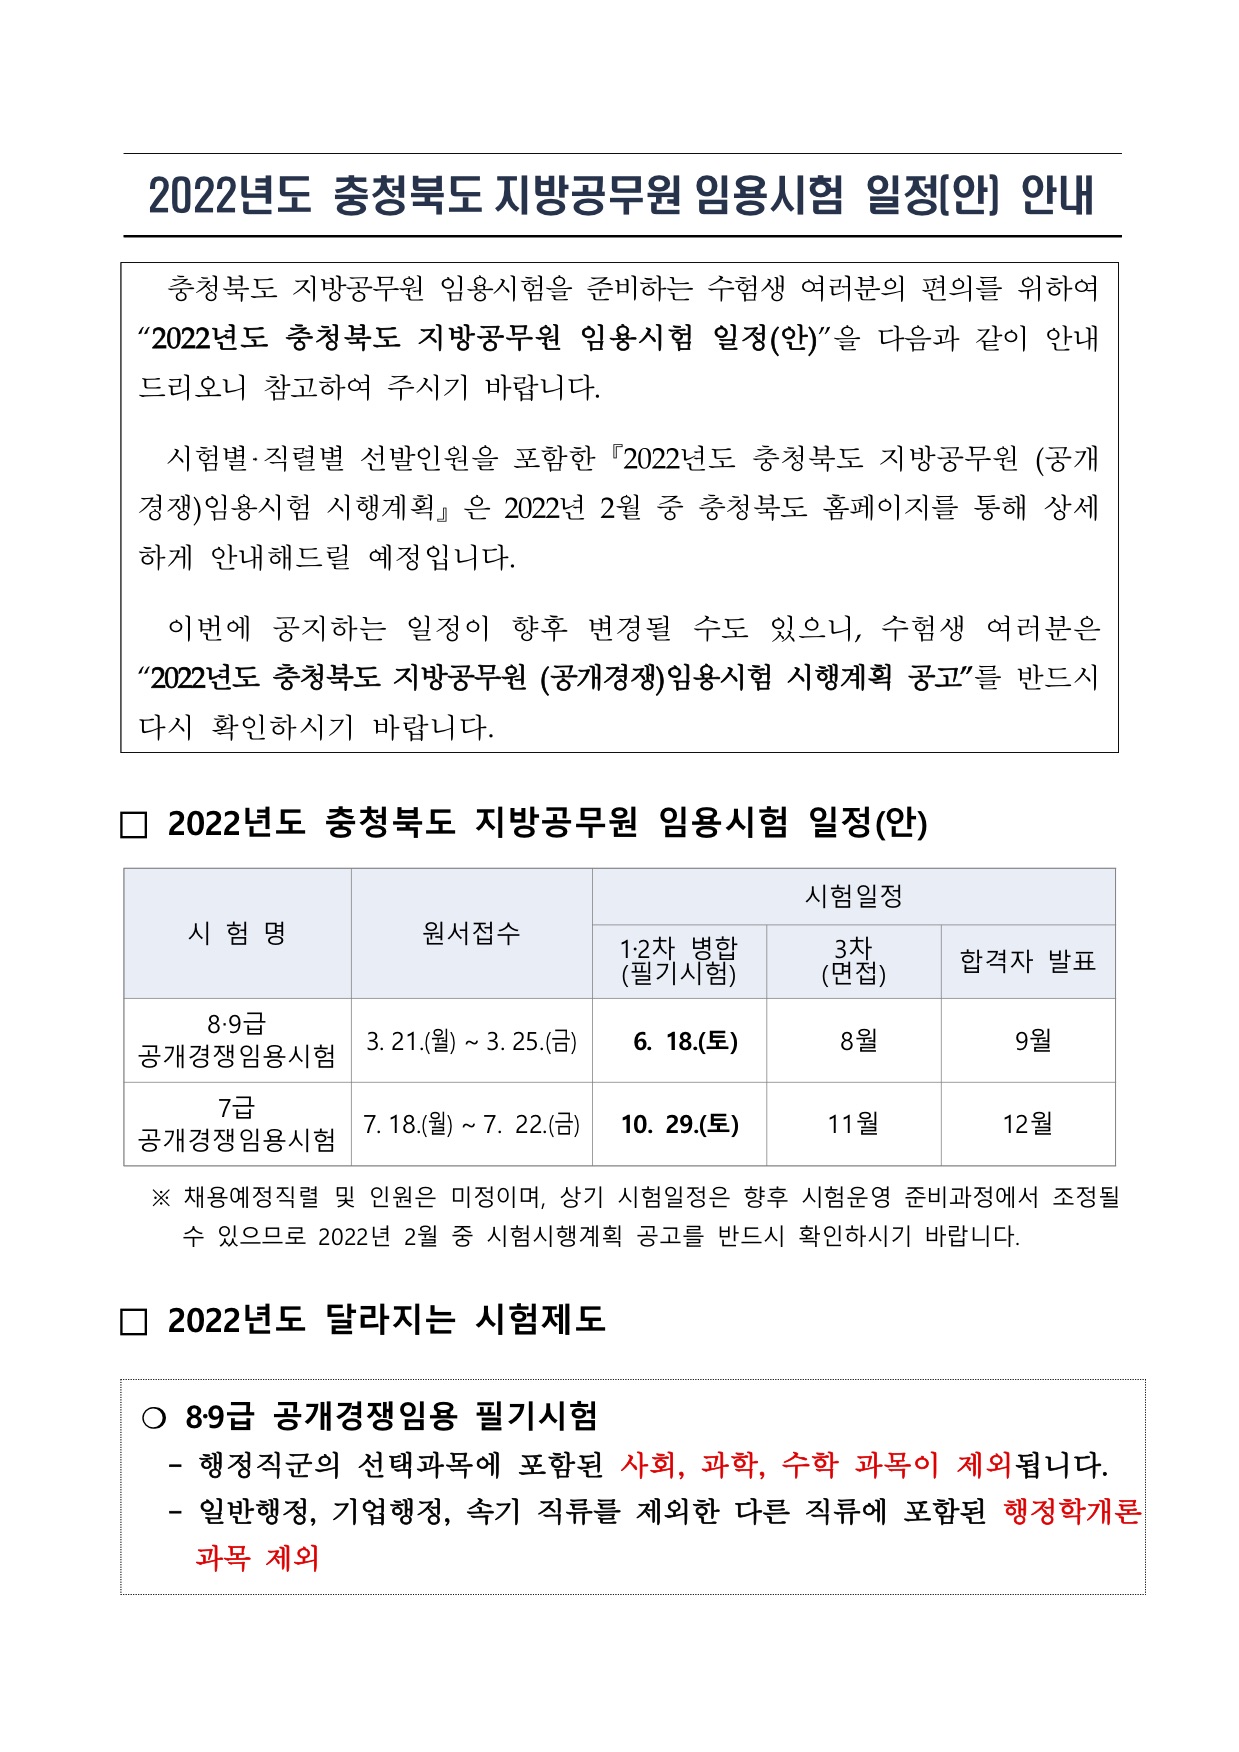 공기출 - 2022년 충청북도 지방공무원 임용시험 일정 사전안내